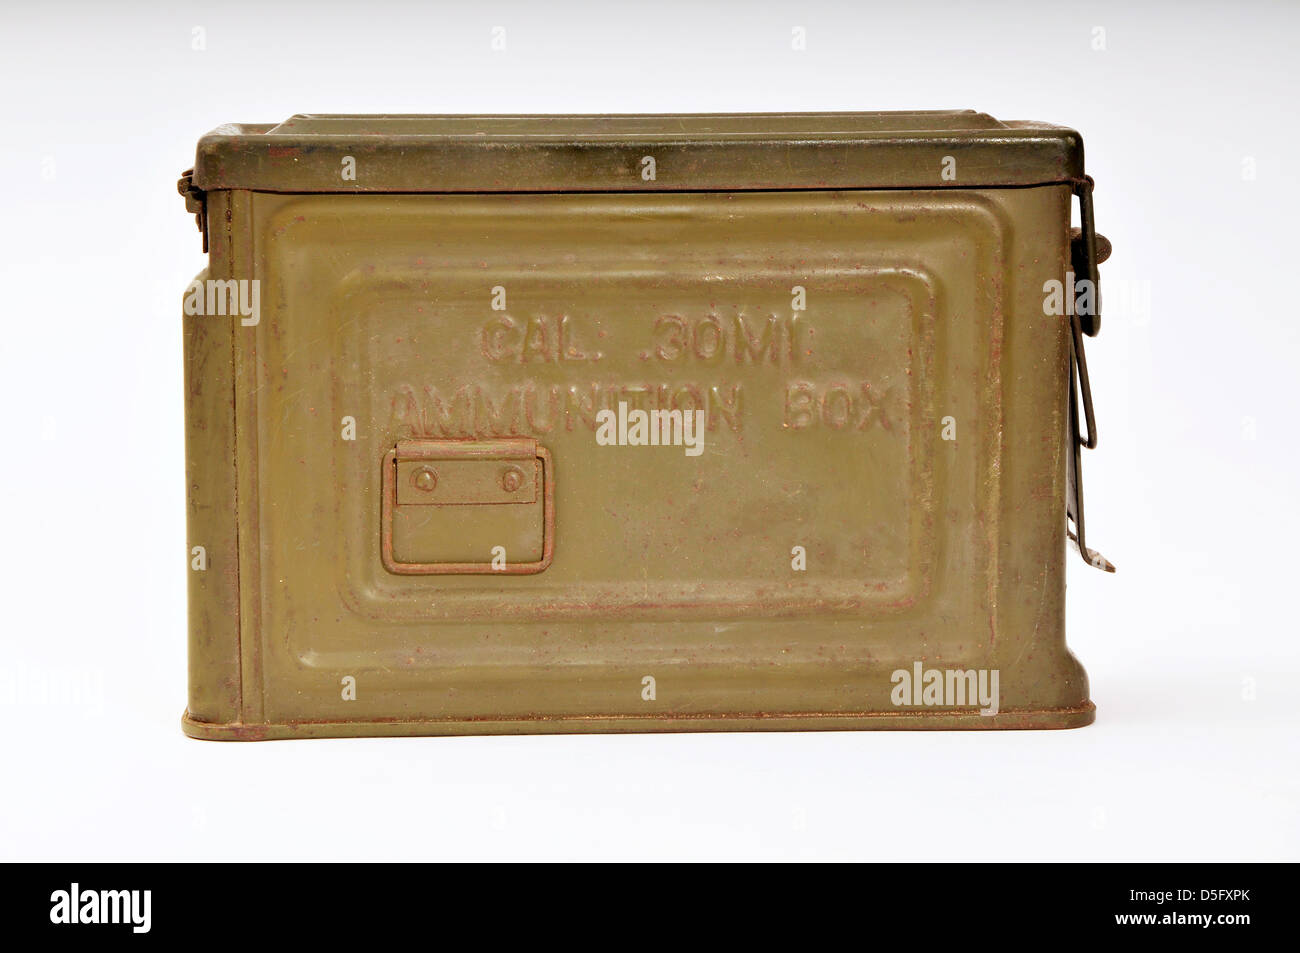 English ww2 Vintage British Army .303 Ammunition Crate Box WW2